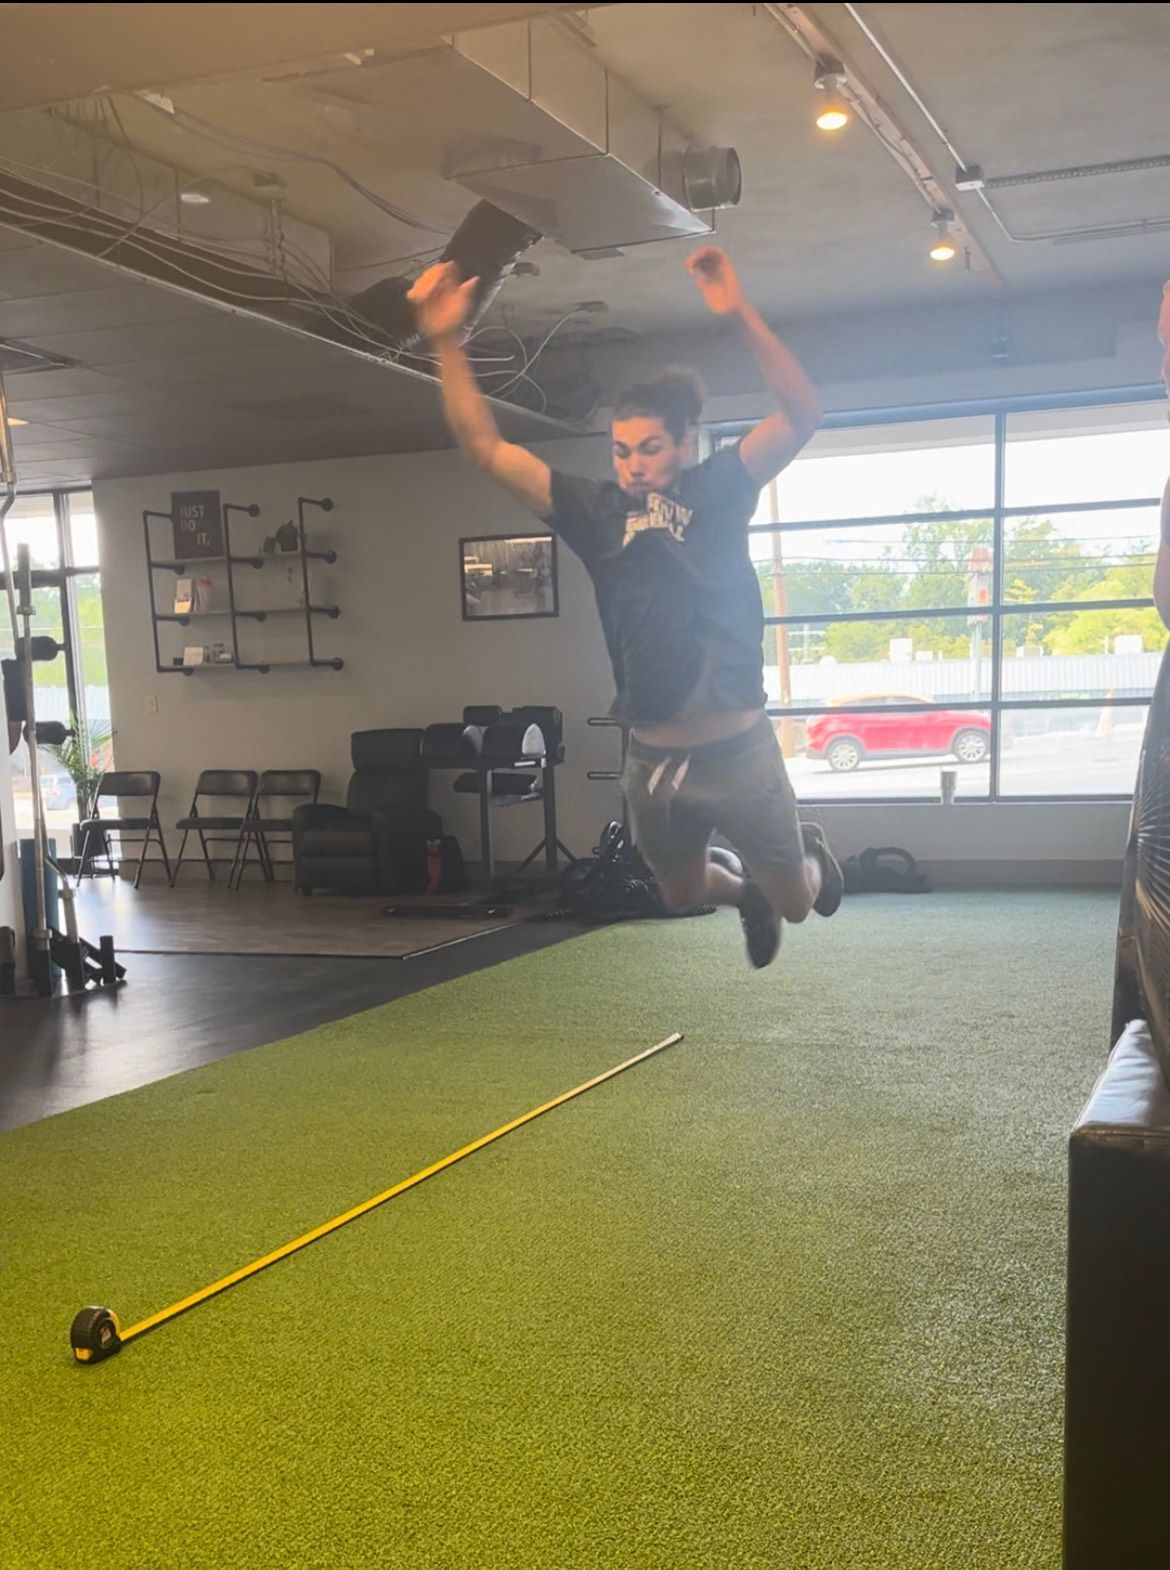 A man is jumping in the air in a gym next to a tape measure.